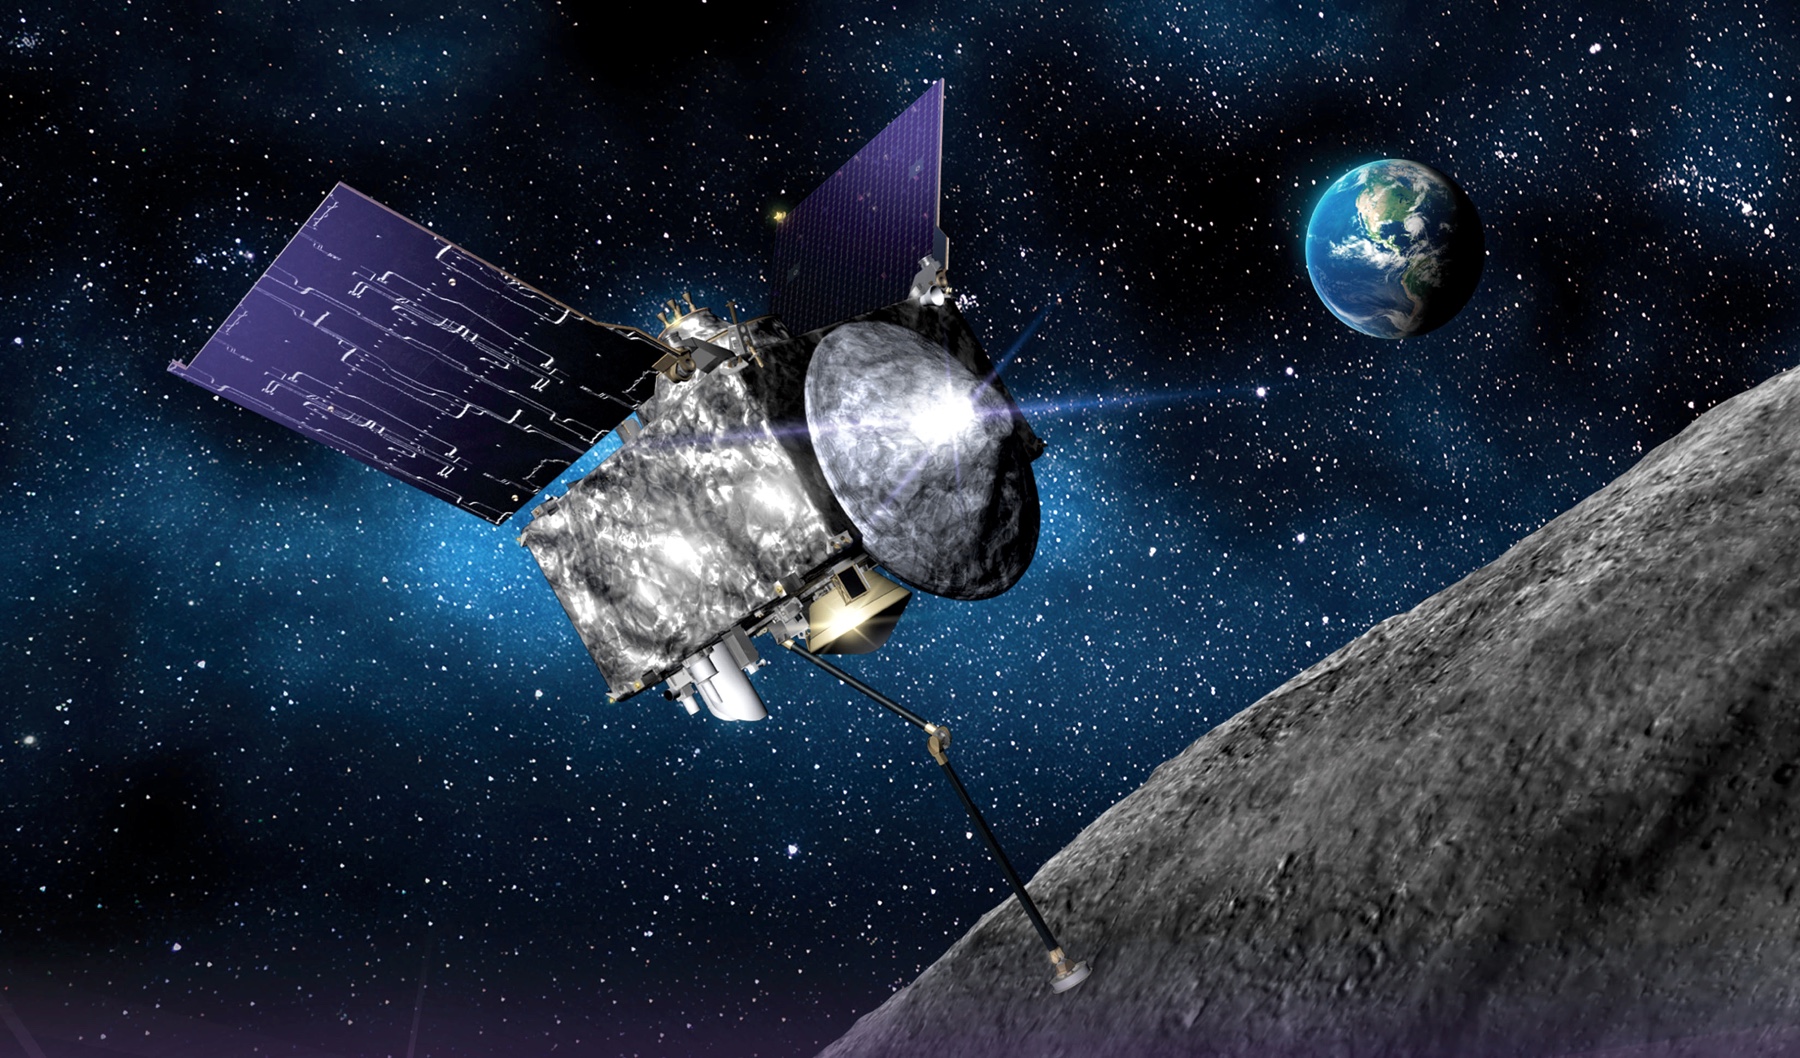 Die Oberfläche des Asteroiden, auf dem die NASA-Sonde OSIRIS-REx gelandet ist, glich einer "Plastikballgrube"